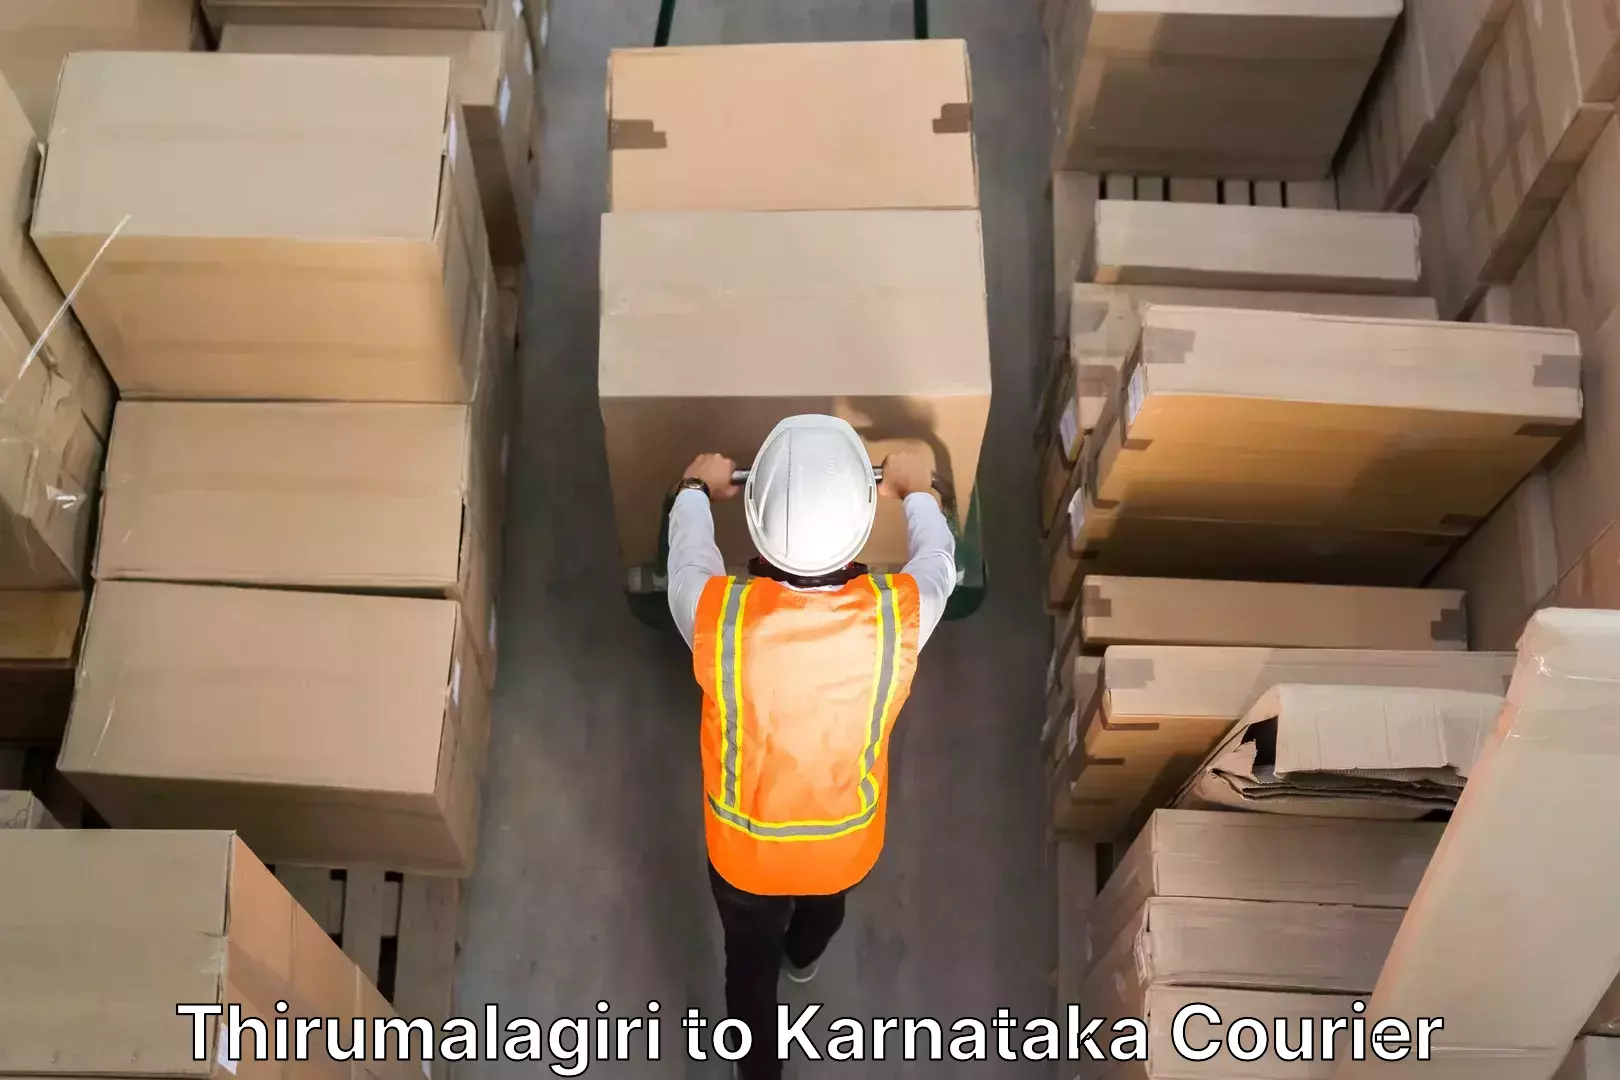 Furniture handling services Thirumalagiri to Karnataka